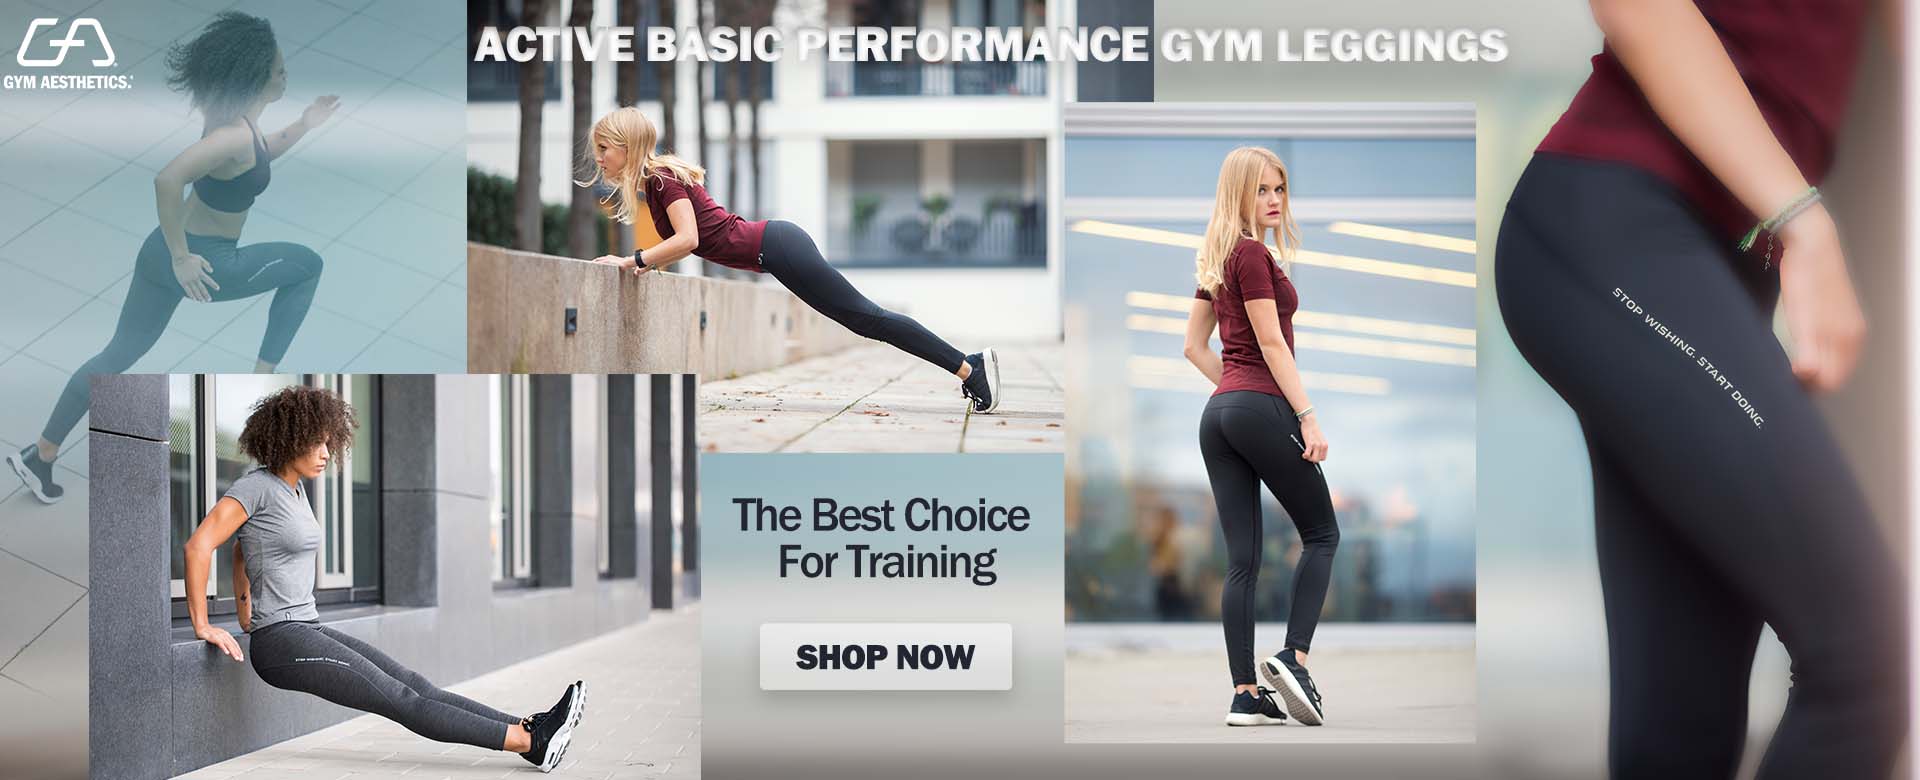 Active basic performance gym Leggings for women in Black | Gym Aesthetics 